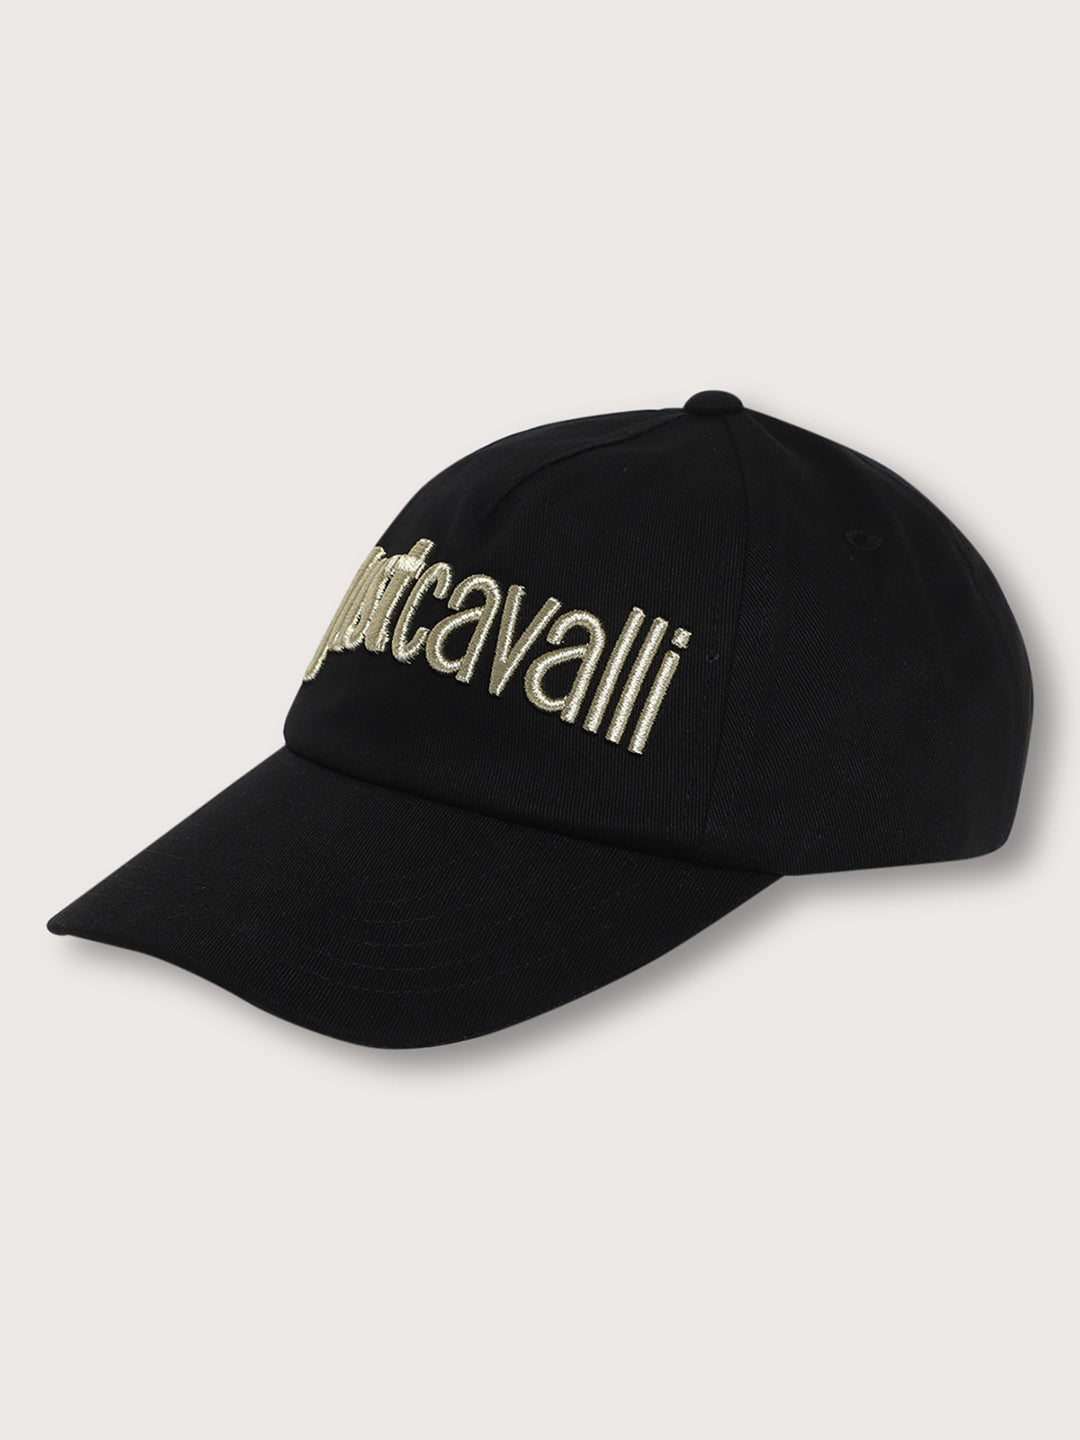 Just Cavalli Men Black Cap